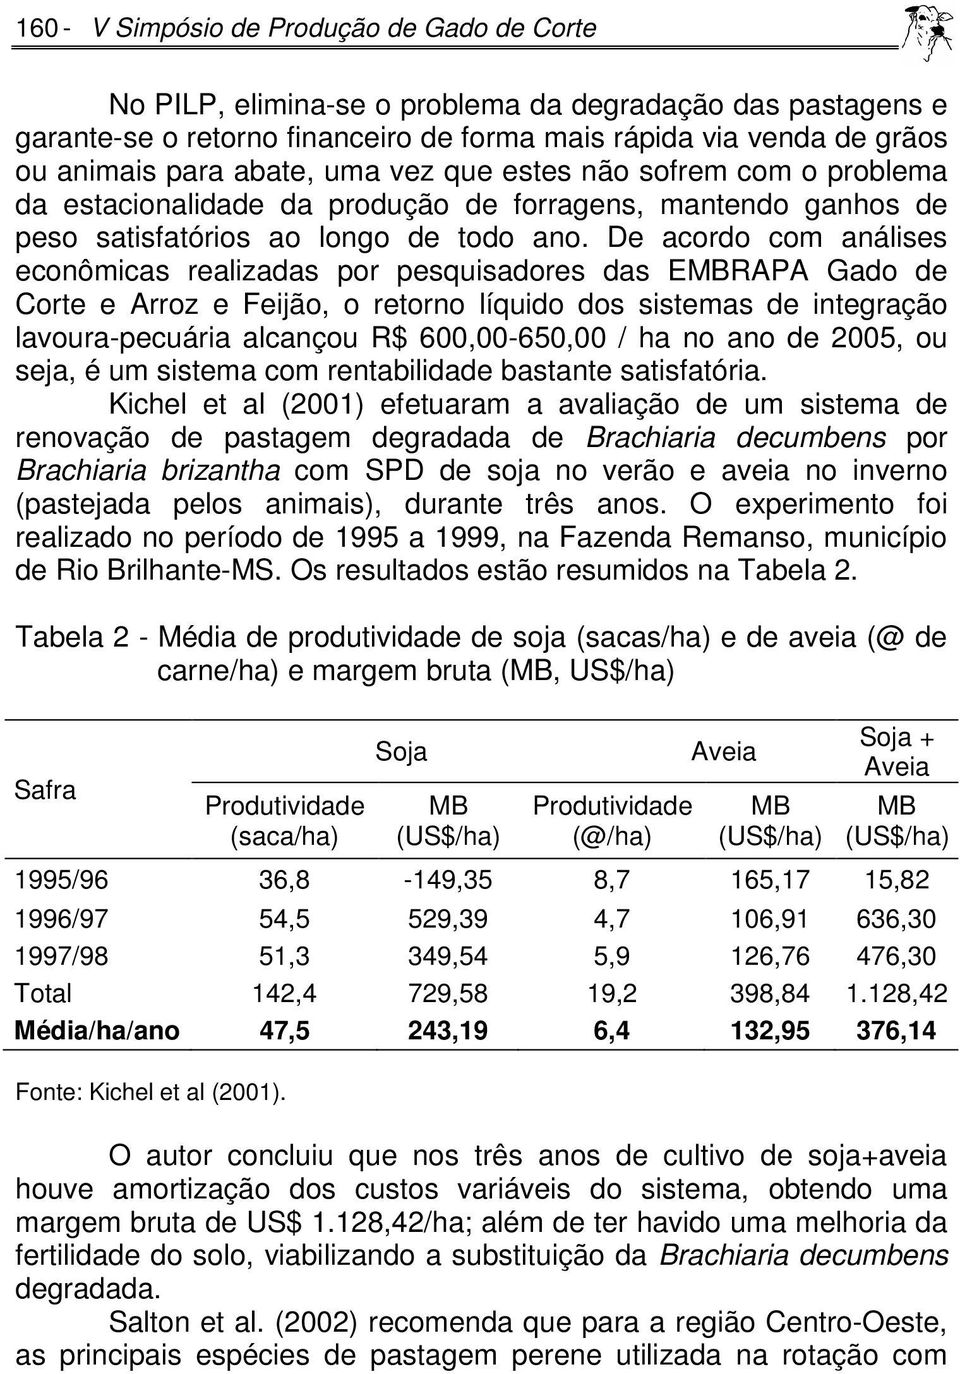 De acordo com análises econômicas realizadas por pesquisadores das EMBRAPA Gado de Corte e Arroz e Feijão, o retorno líquido dos sistemas de integração lavoura-pecuária alcançou R$ 600,00-650,00 / ha